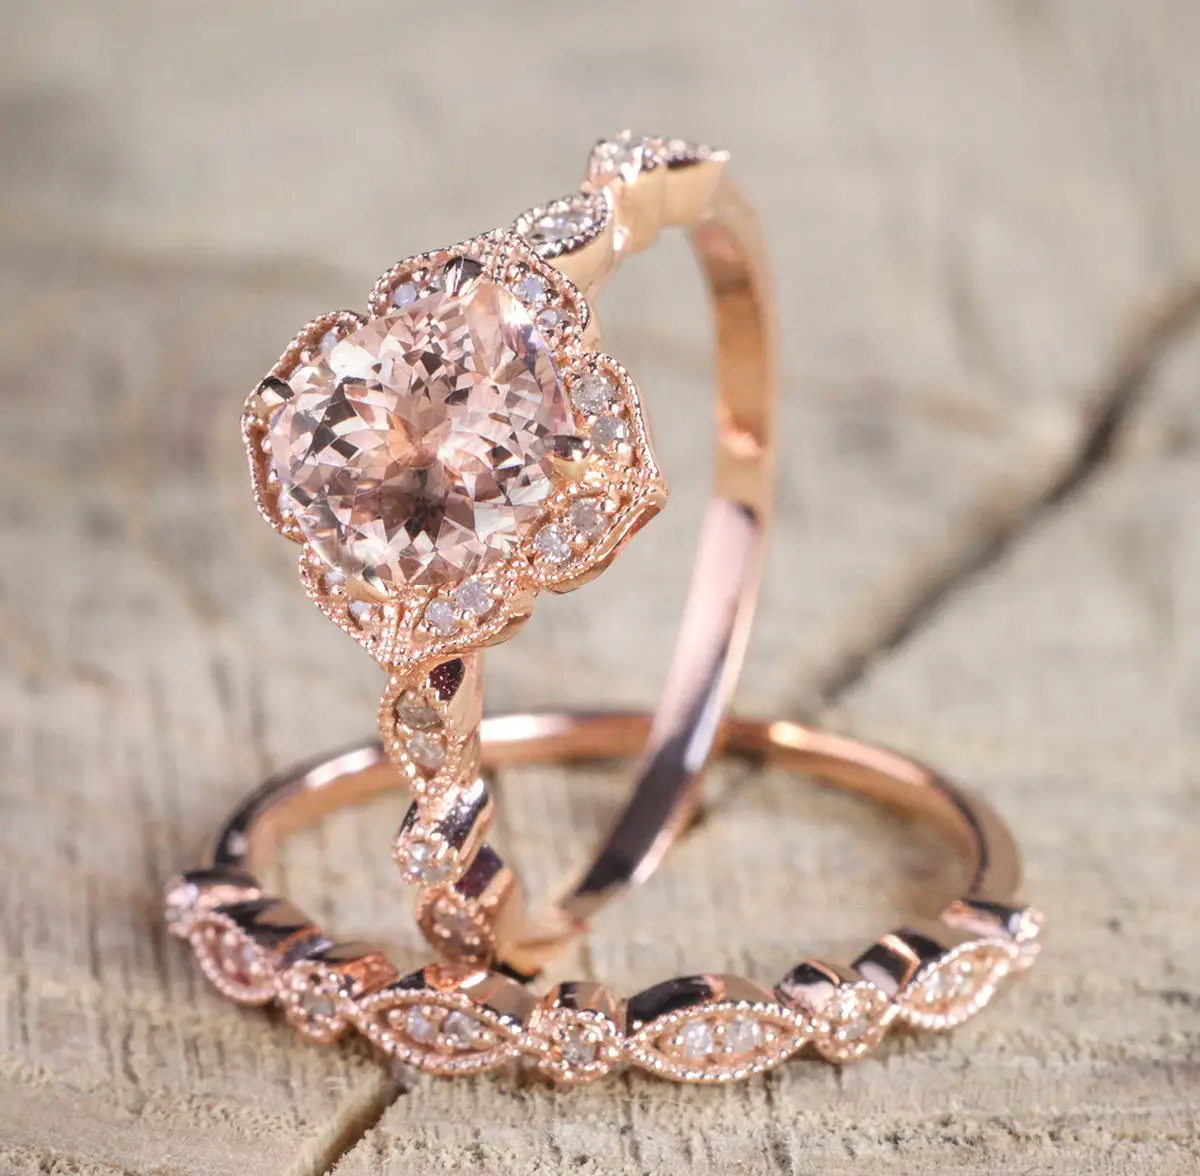 Набор из двух элегантных колец из розового золота с цирконами высокого качества, гипоаллергенный, уникальный дизайн 2018 года для свадебных украшений.